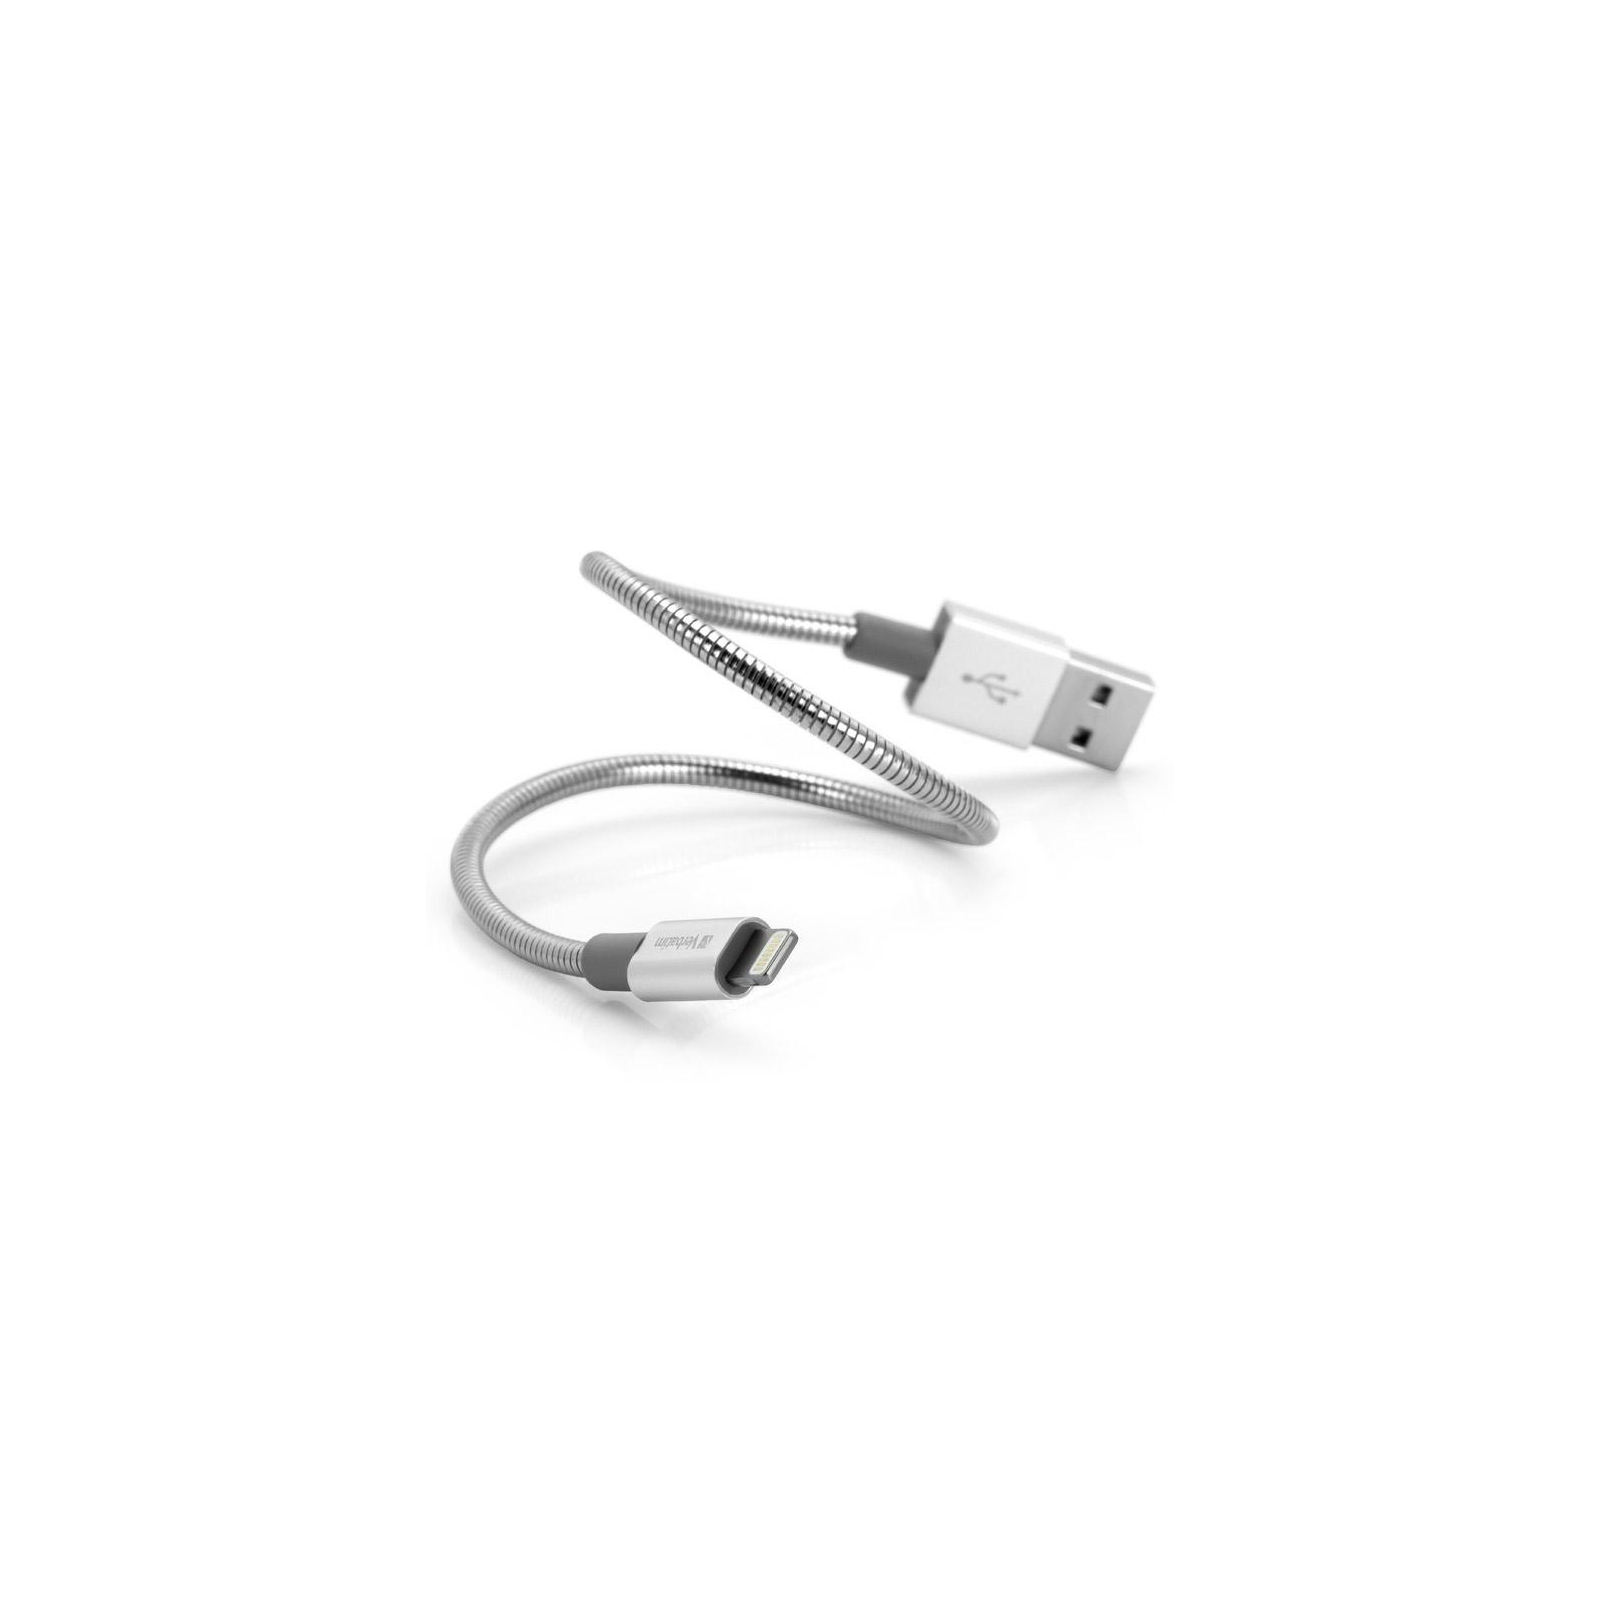 Дата кабель USB 2.0 AM to Lightning 1.0m silver Verbatim (48859) изображение 3